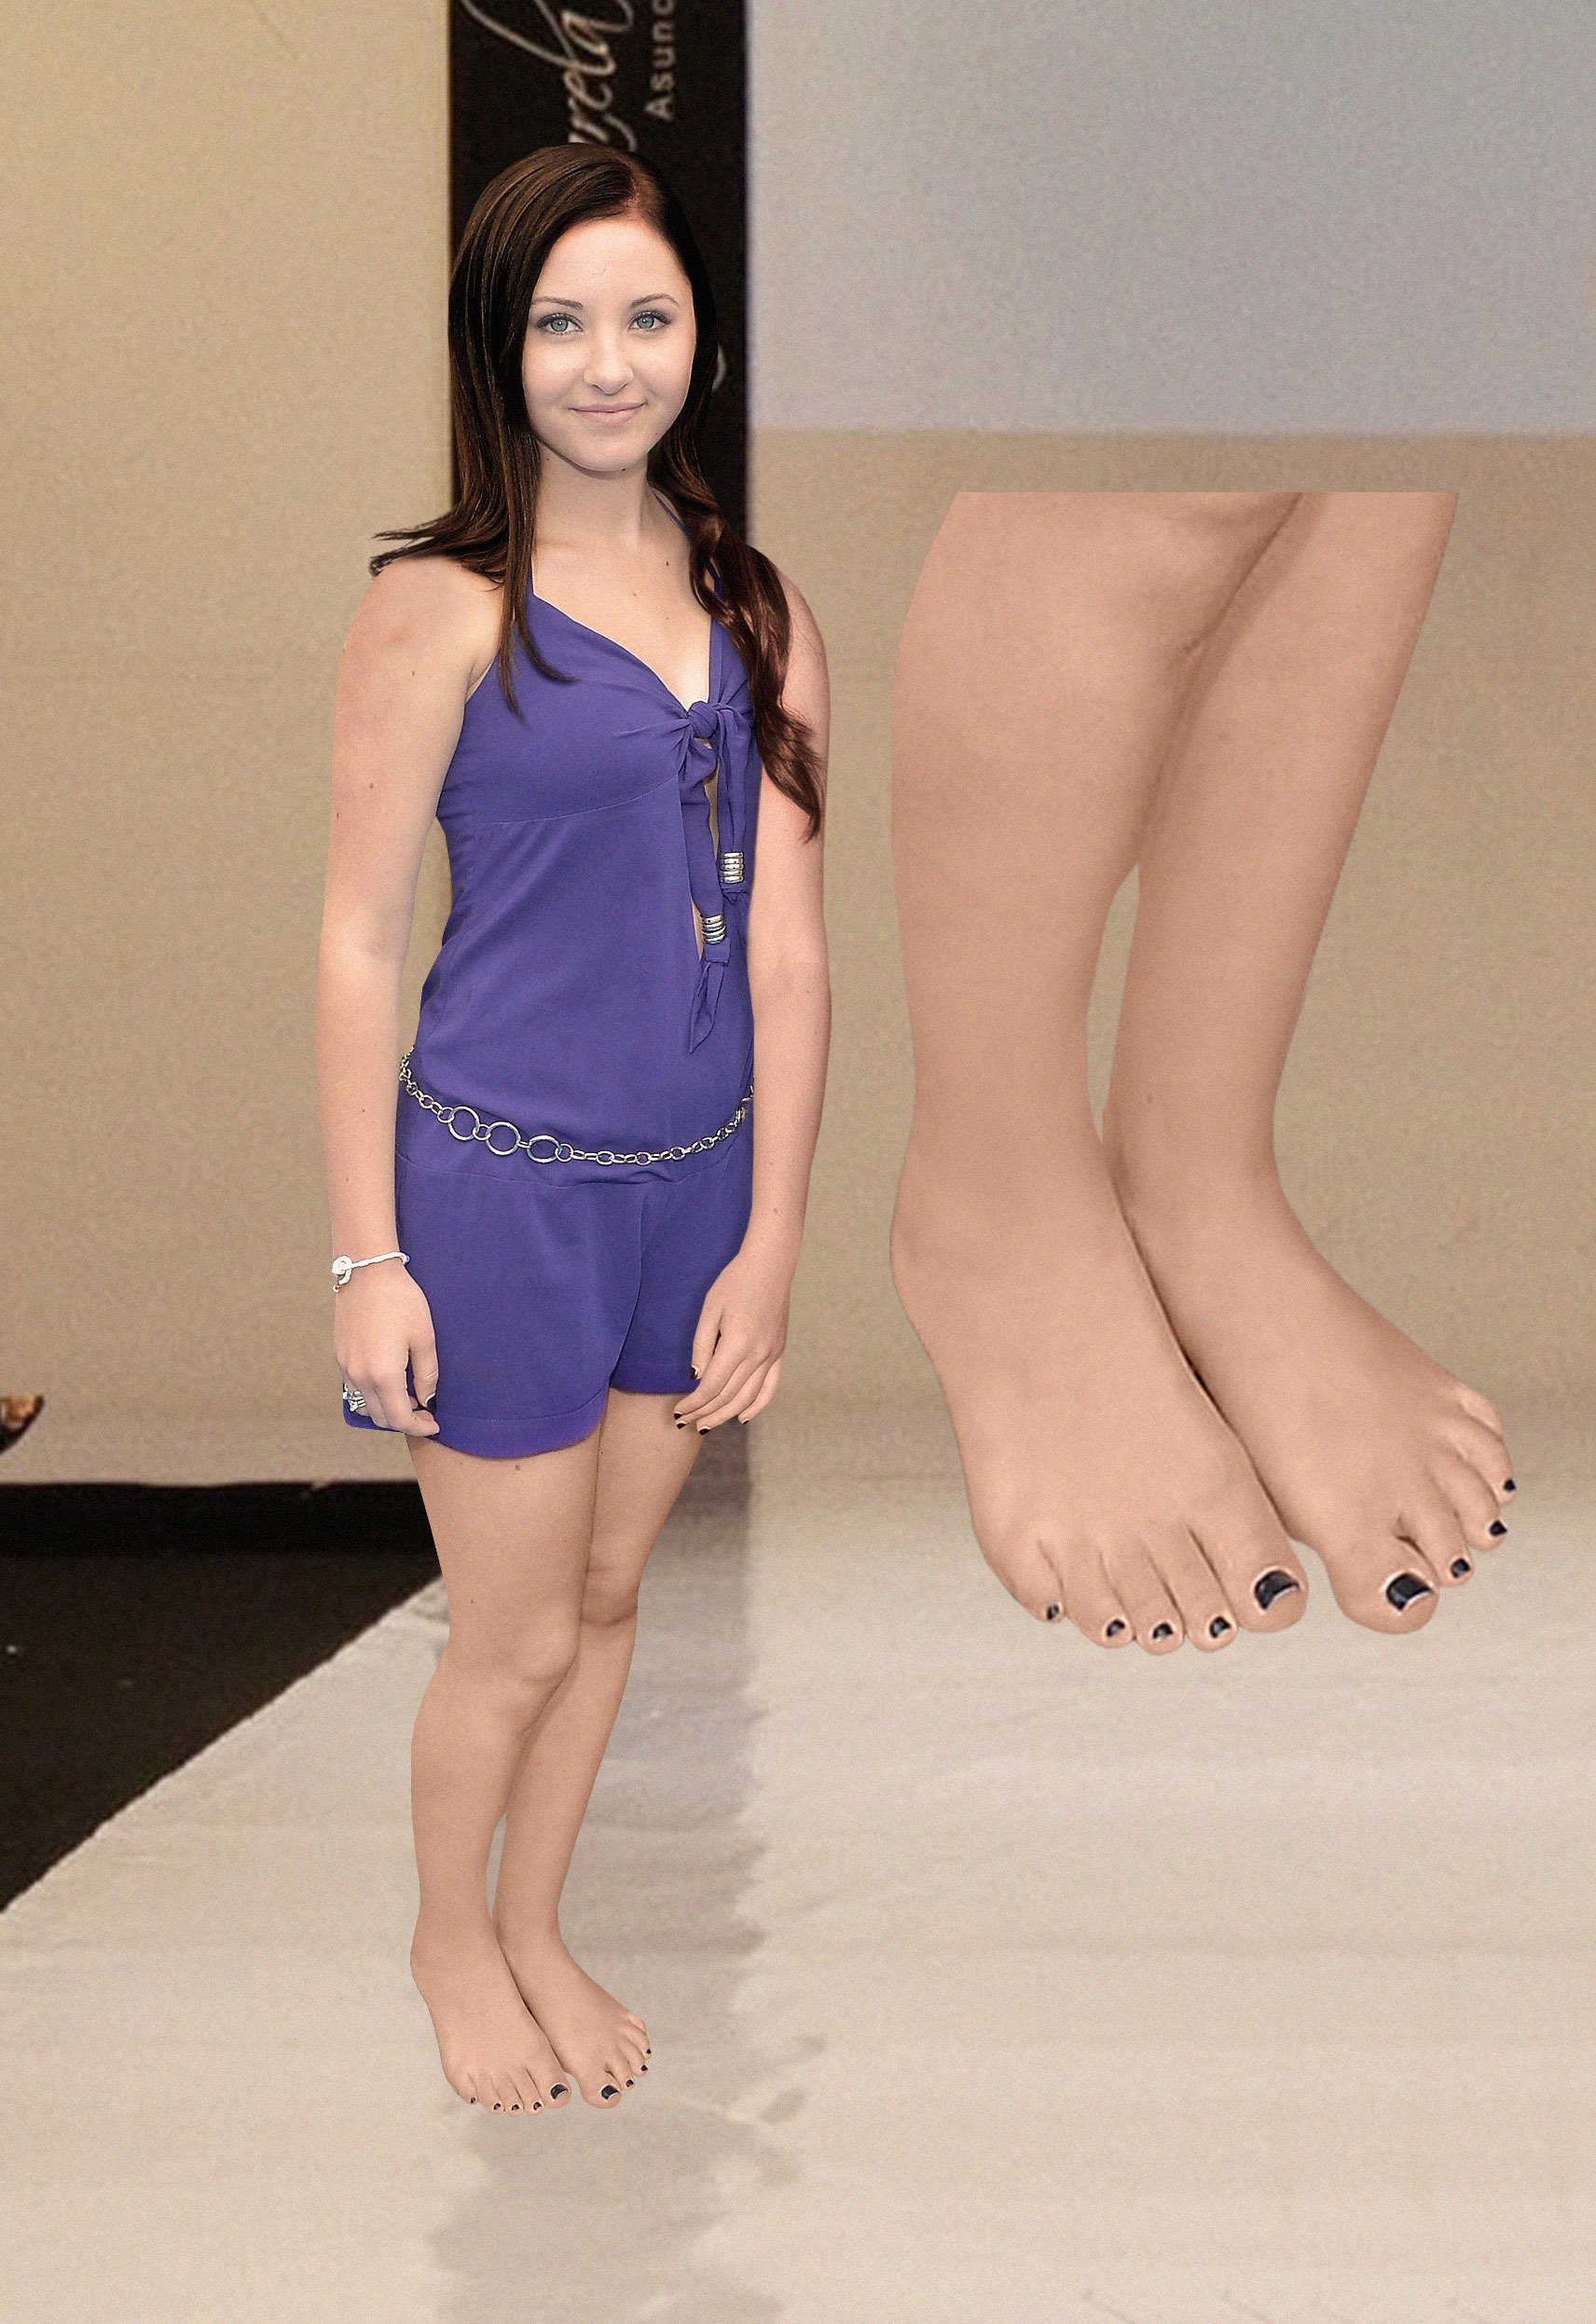 Rachel G. Fox's Feet